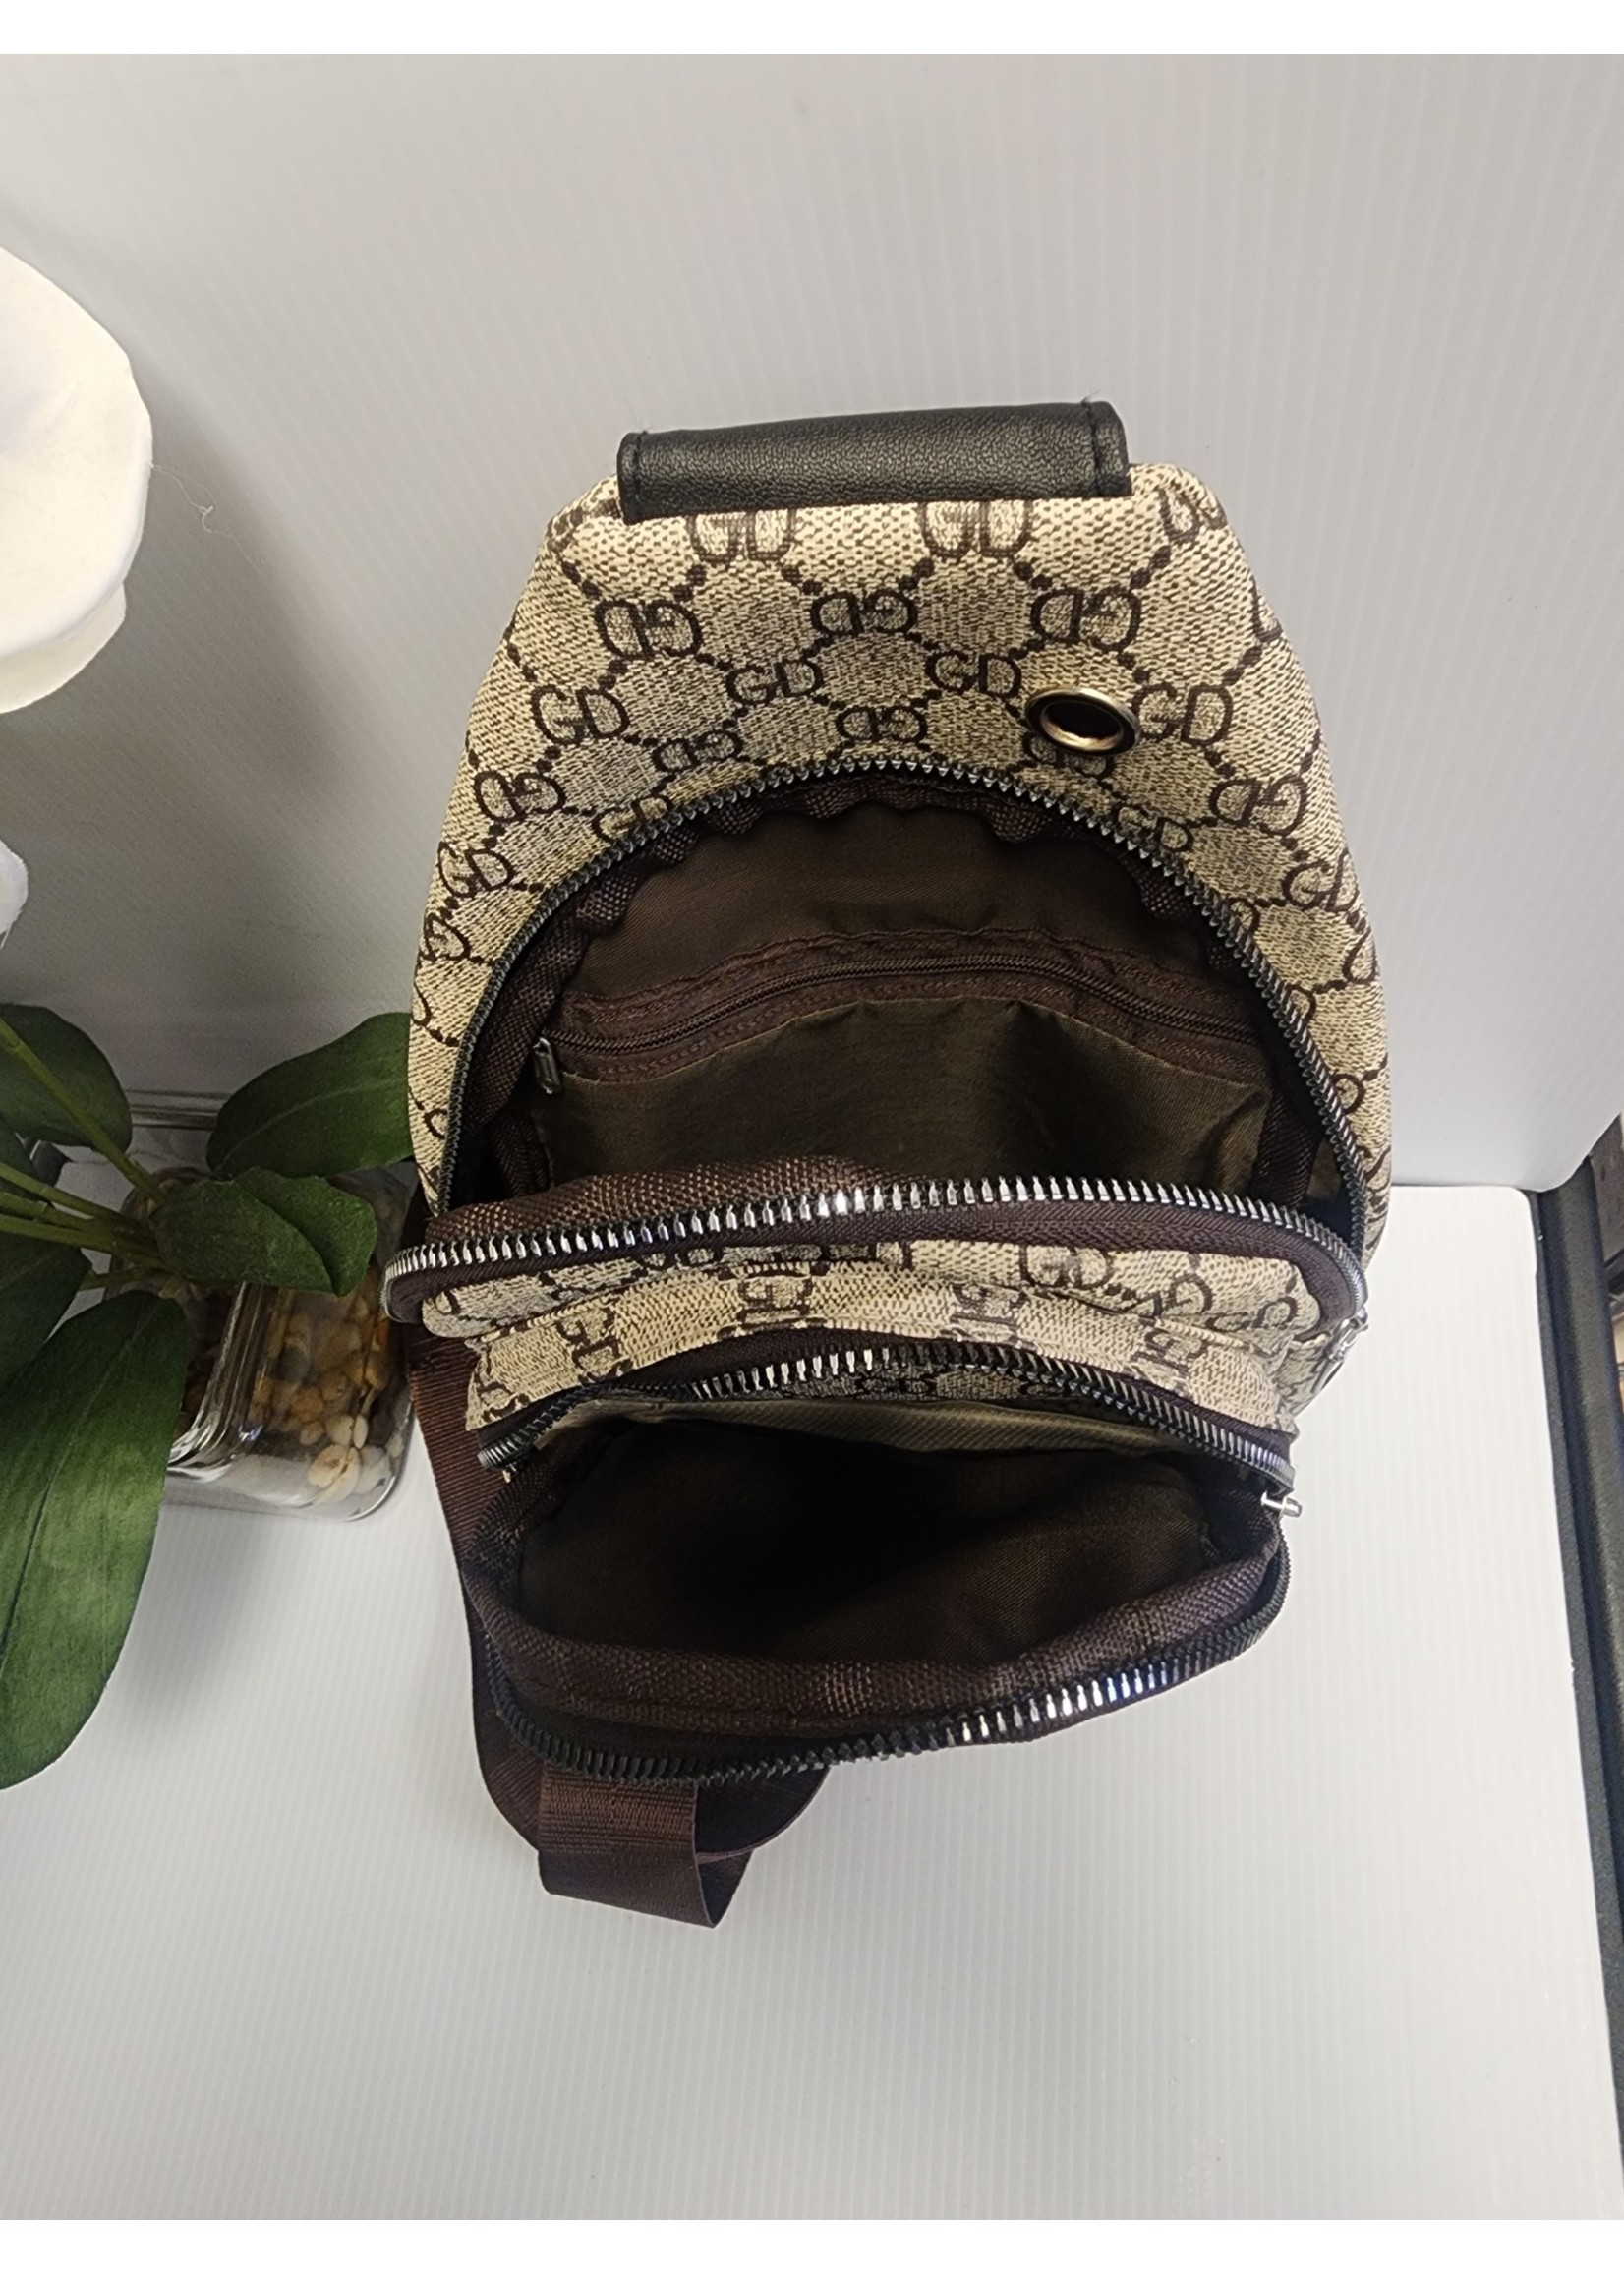 GD Crossbody Shoulder Sling Bag (Pre-owned) - Doubletake Boutique LLC